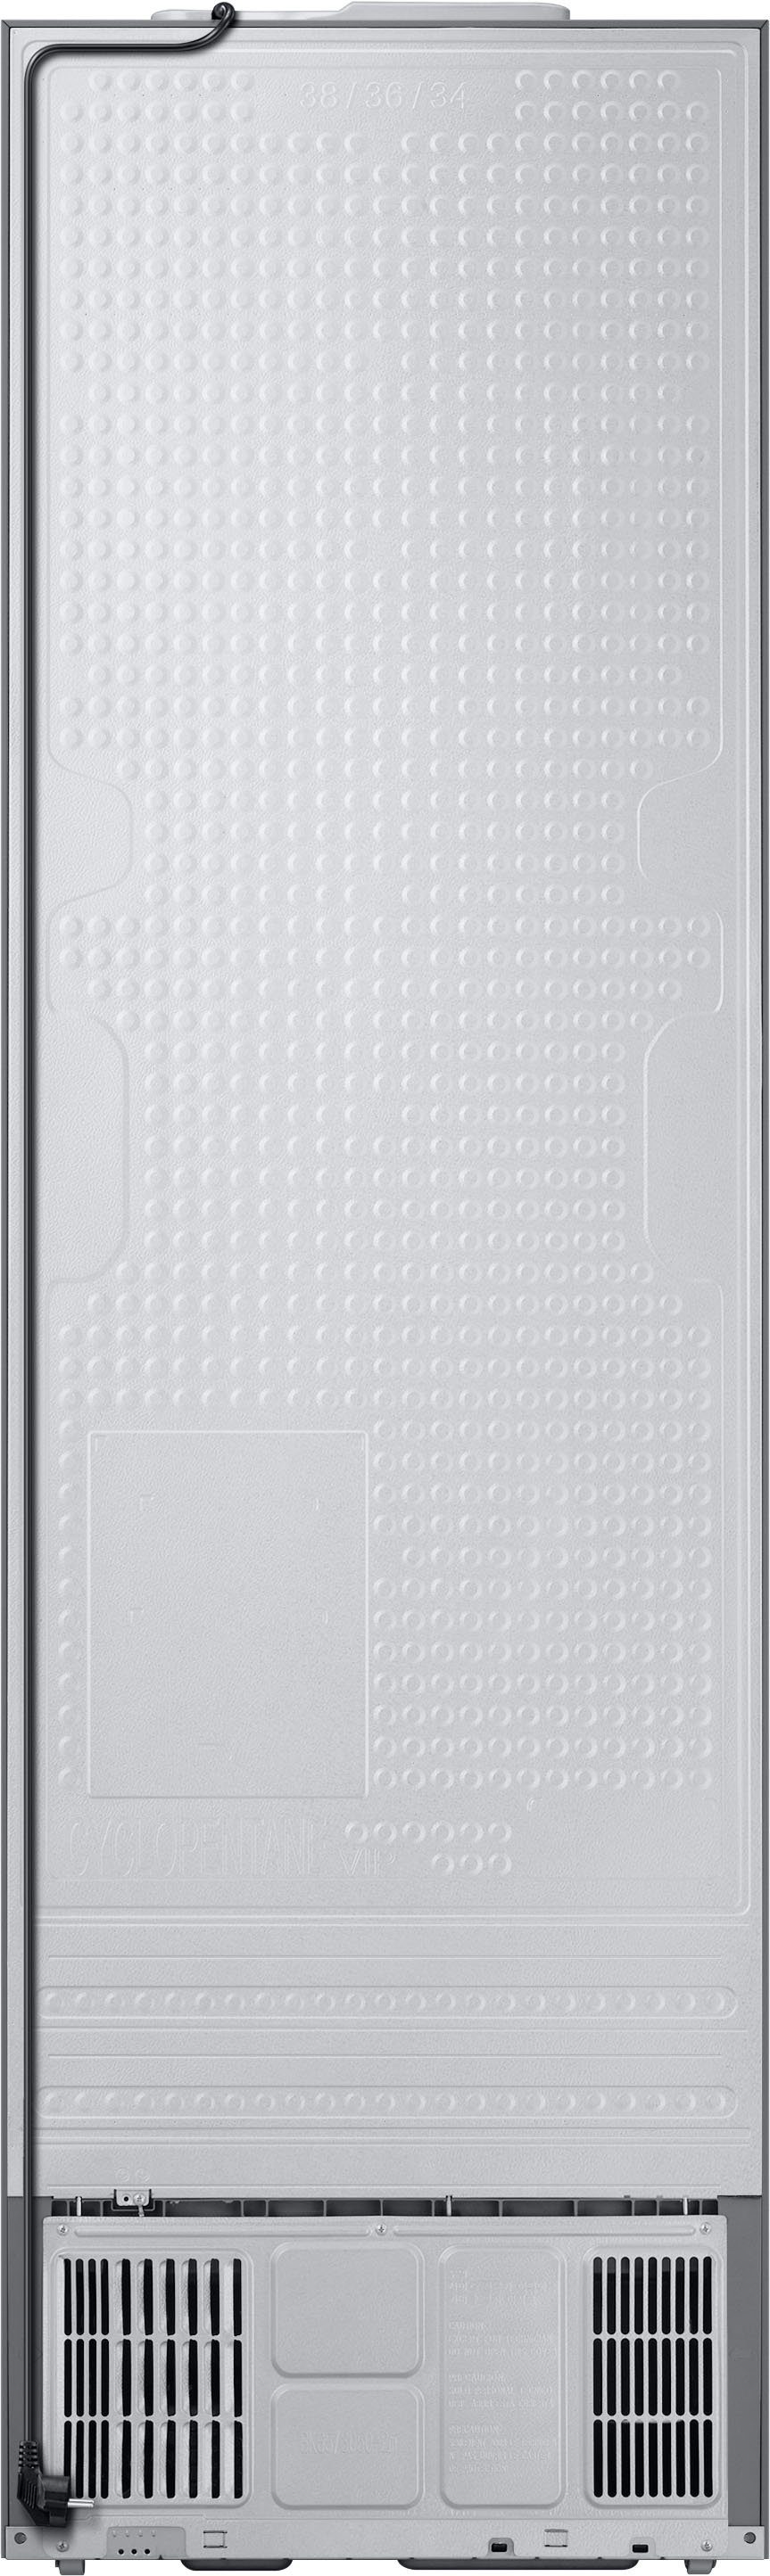 Samsung Kühl-/Gefrierkombination Bespoke hoch, cm 203 59,5 RL38A6B6C41, breit cm